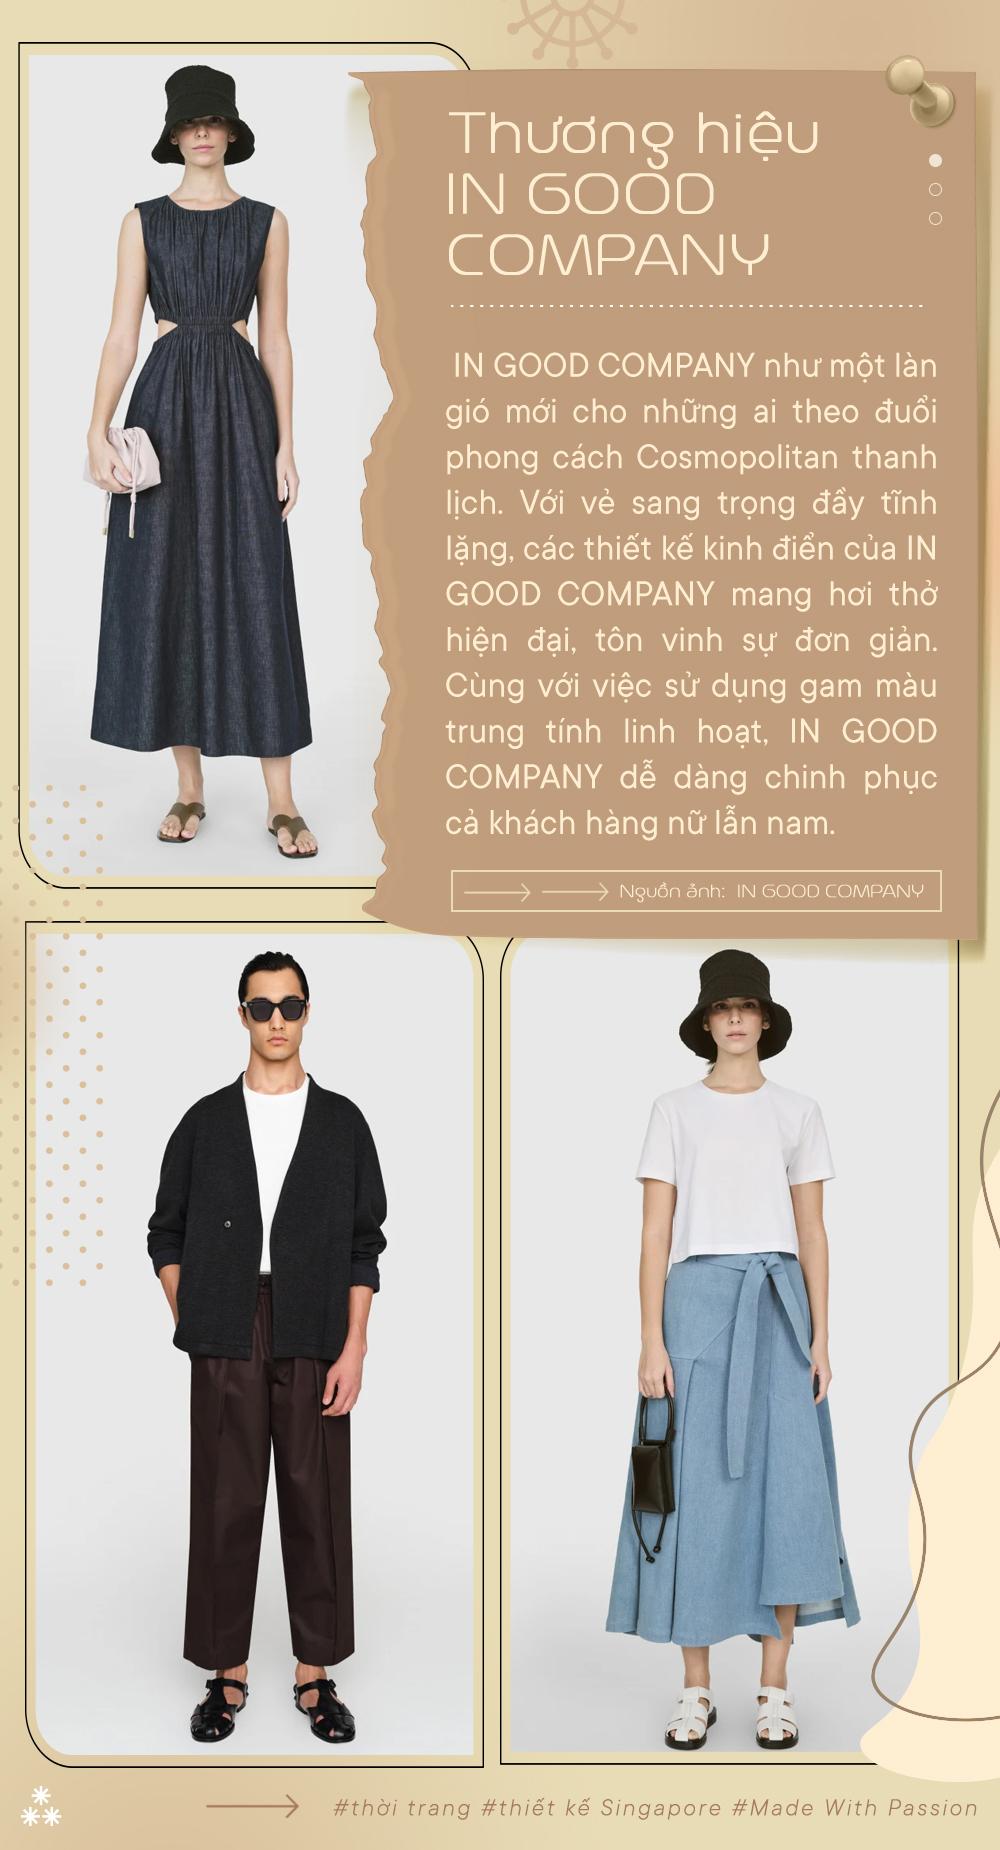 Trải nghiệm phong cách thời trang Cosmopolitan với những thiết kế sành điệu từ các nhà mốt Singapore - Ảnh 4.